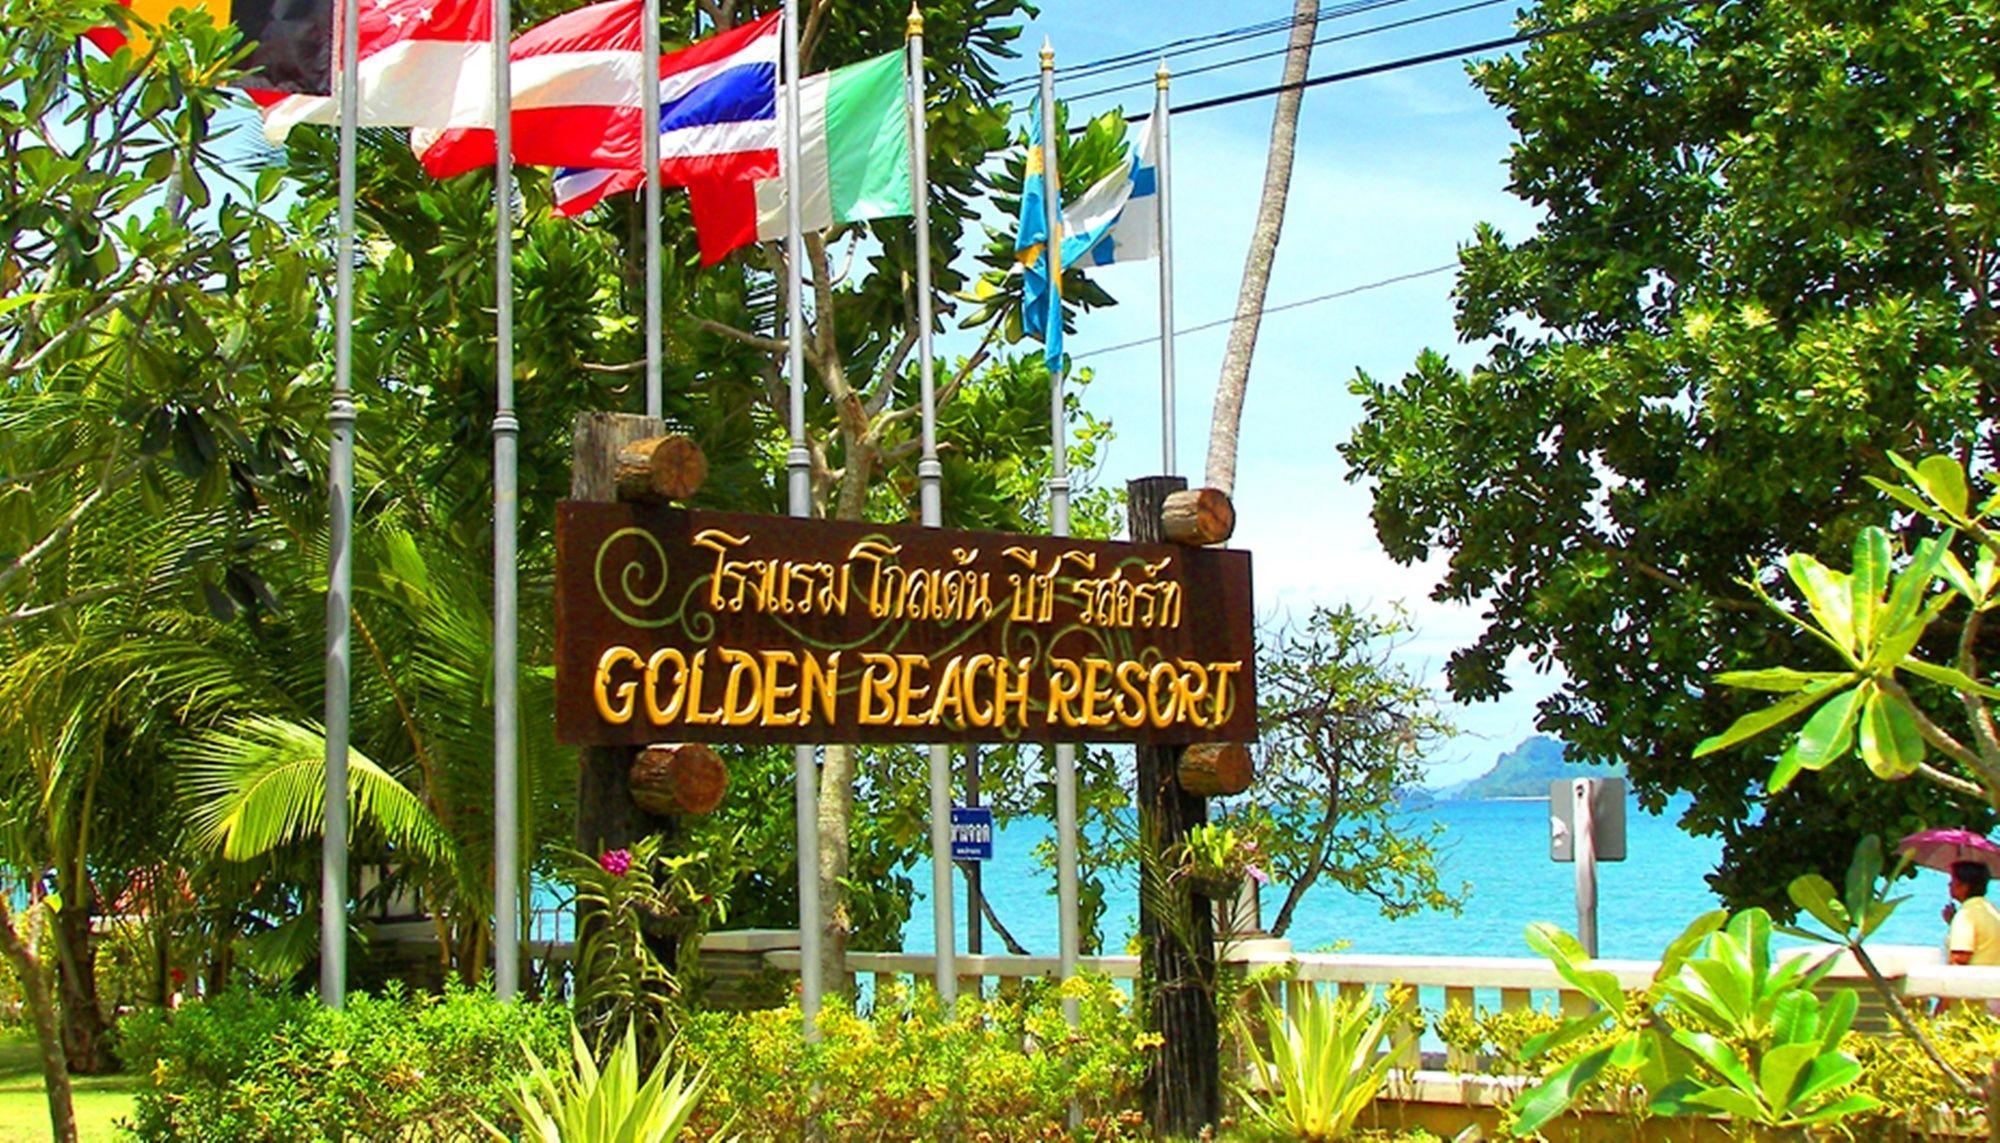 Vista da fachada Golden Beach Resort